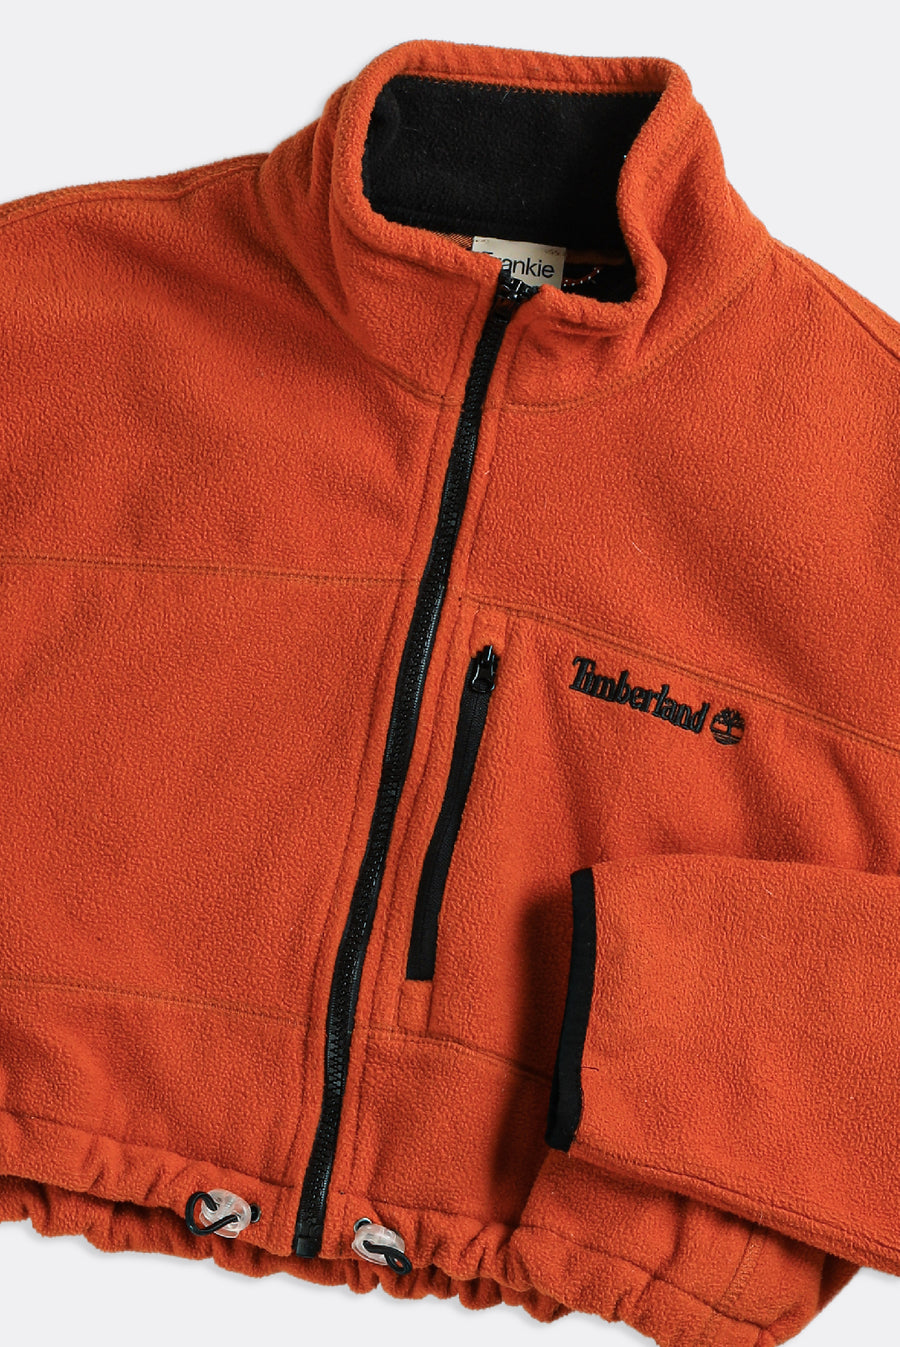 Rework Timbaland Crop Fleece Jacket - M